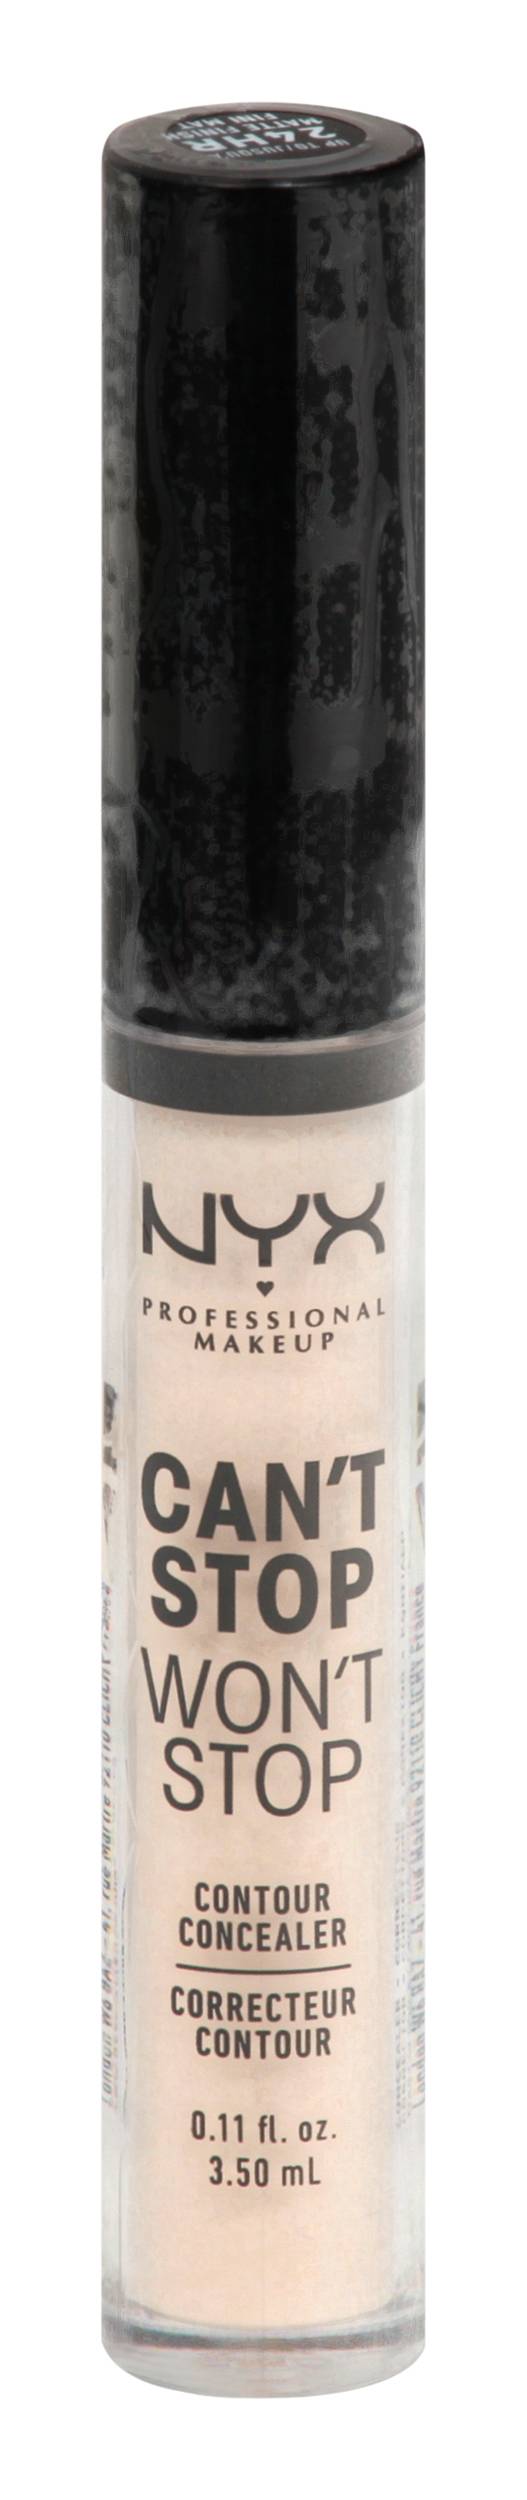 Nyx Professional Makeup Contour Concealer Cswsc02